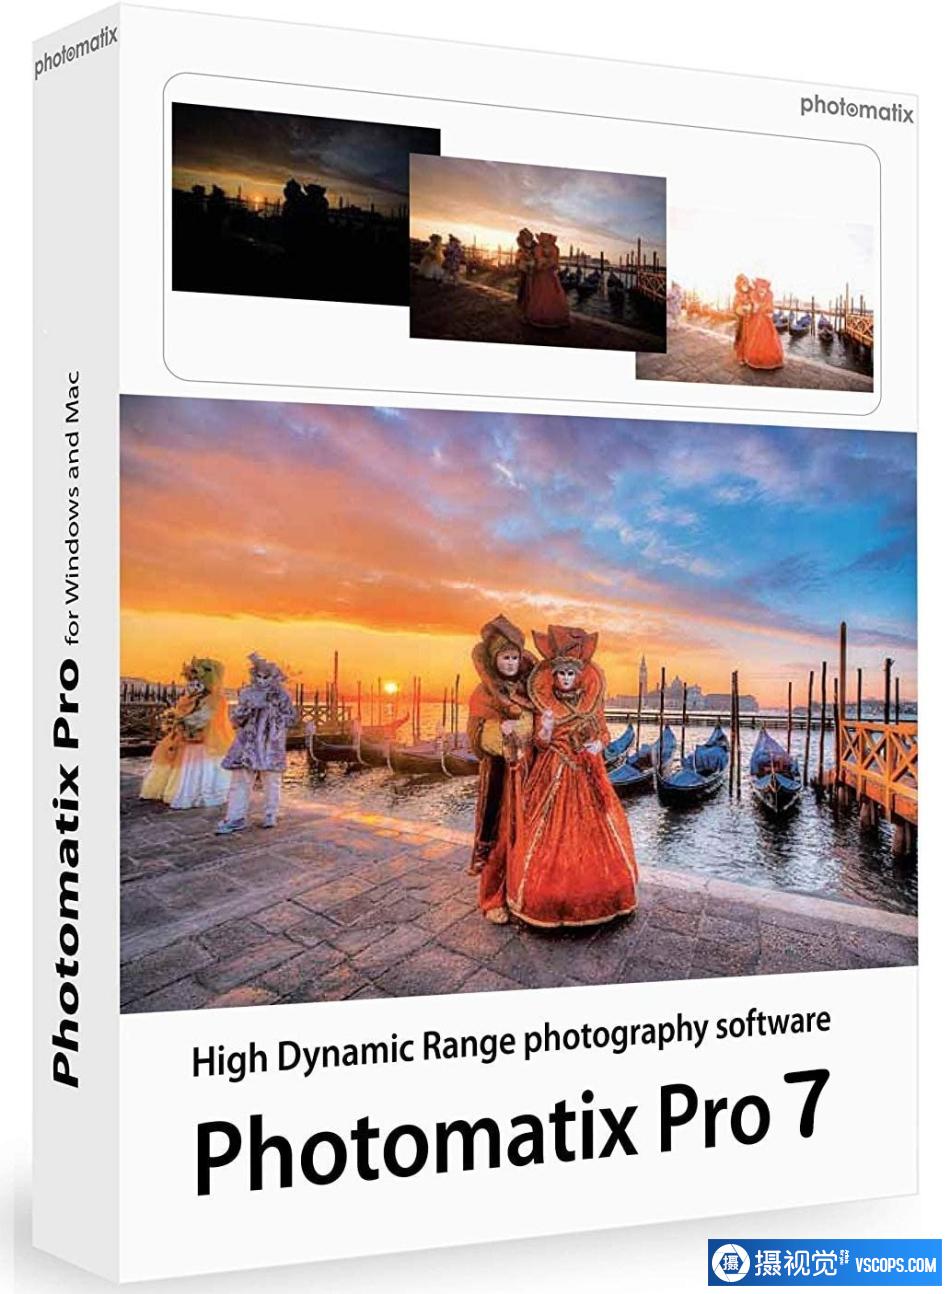 HDRsoft Photomatix Pro 7.1 Beta 7 instaling